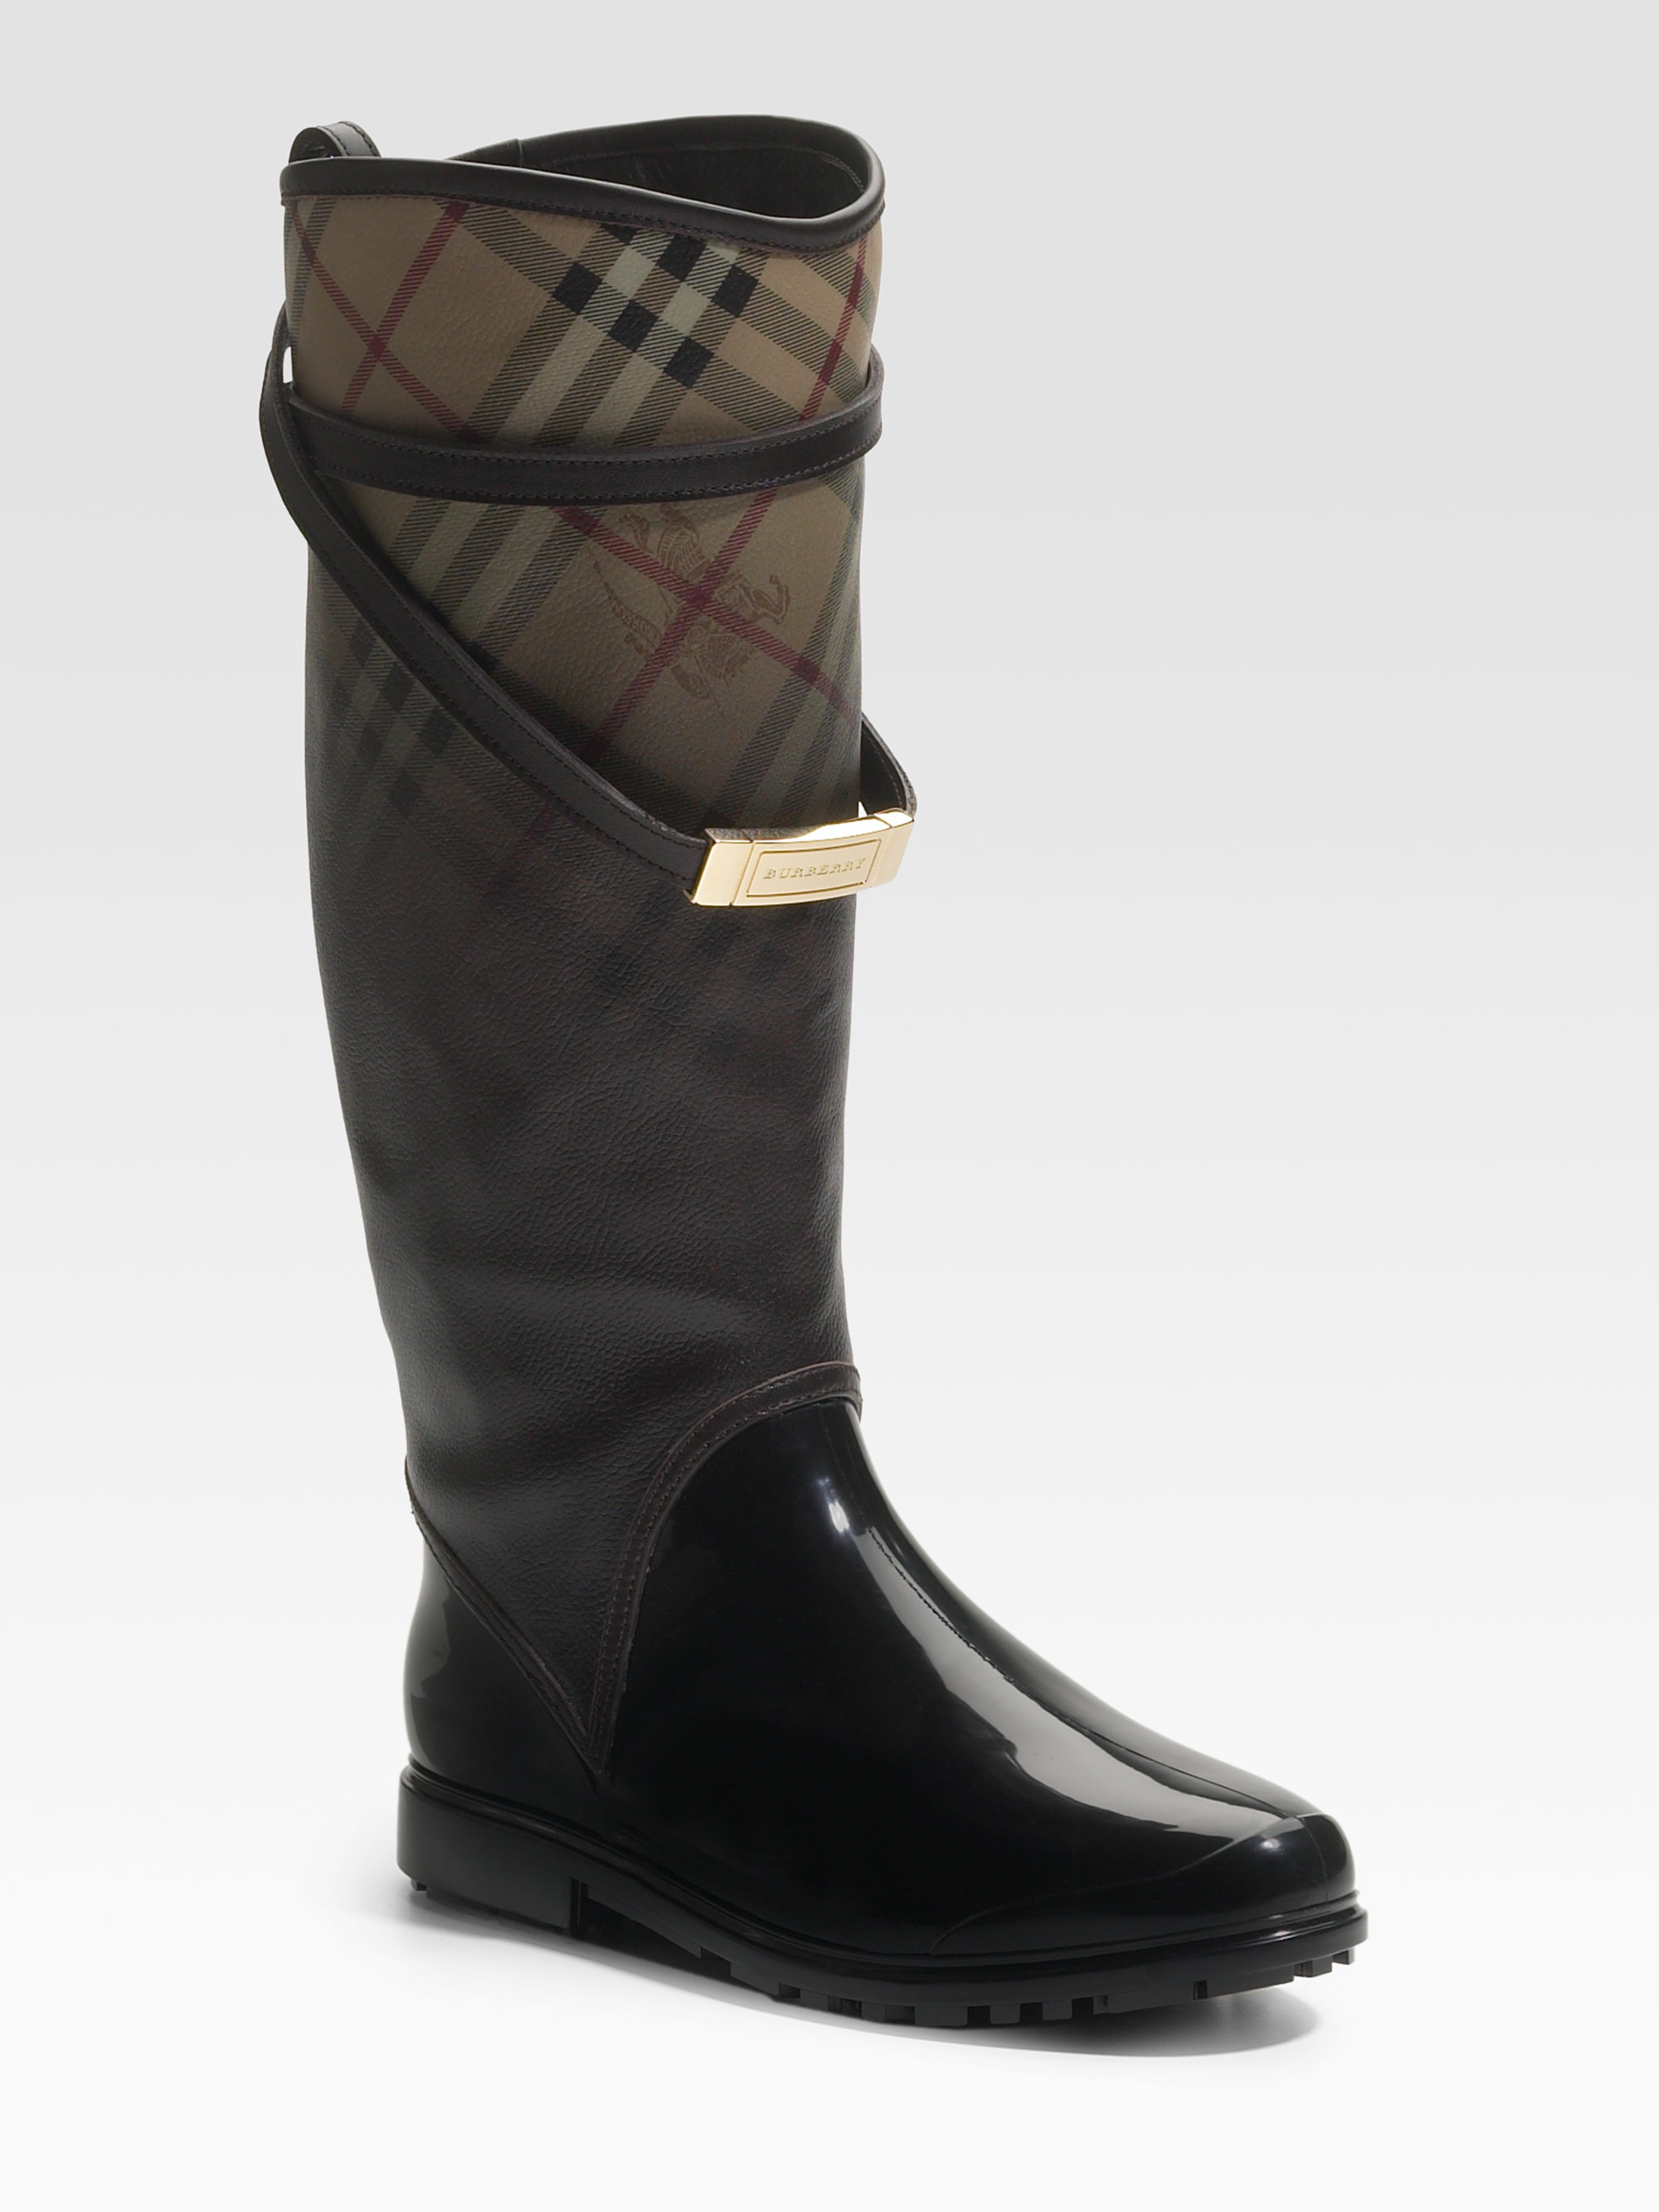 Burberry Wraparound Check Rain Boots in Dark Brown (Brown) - Lyst